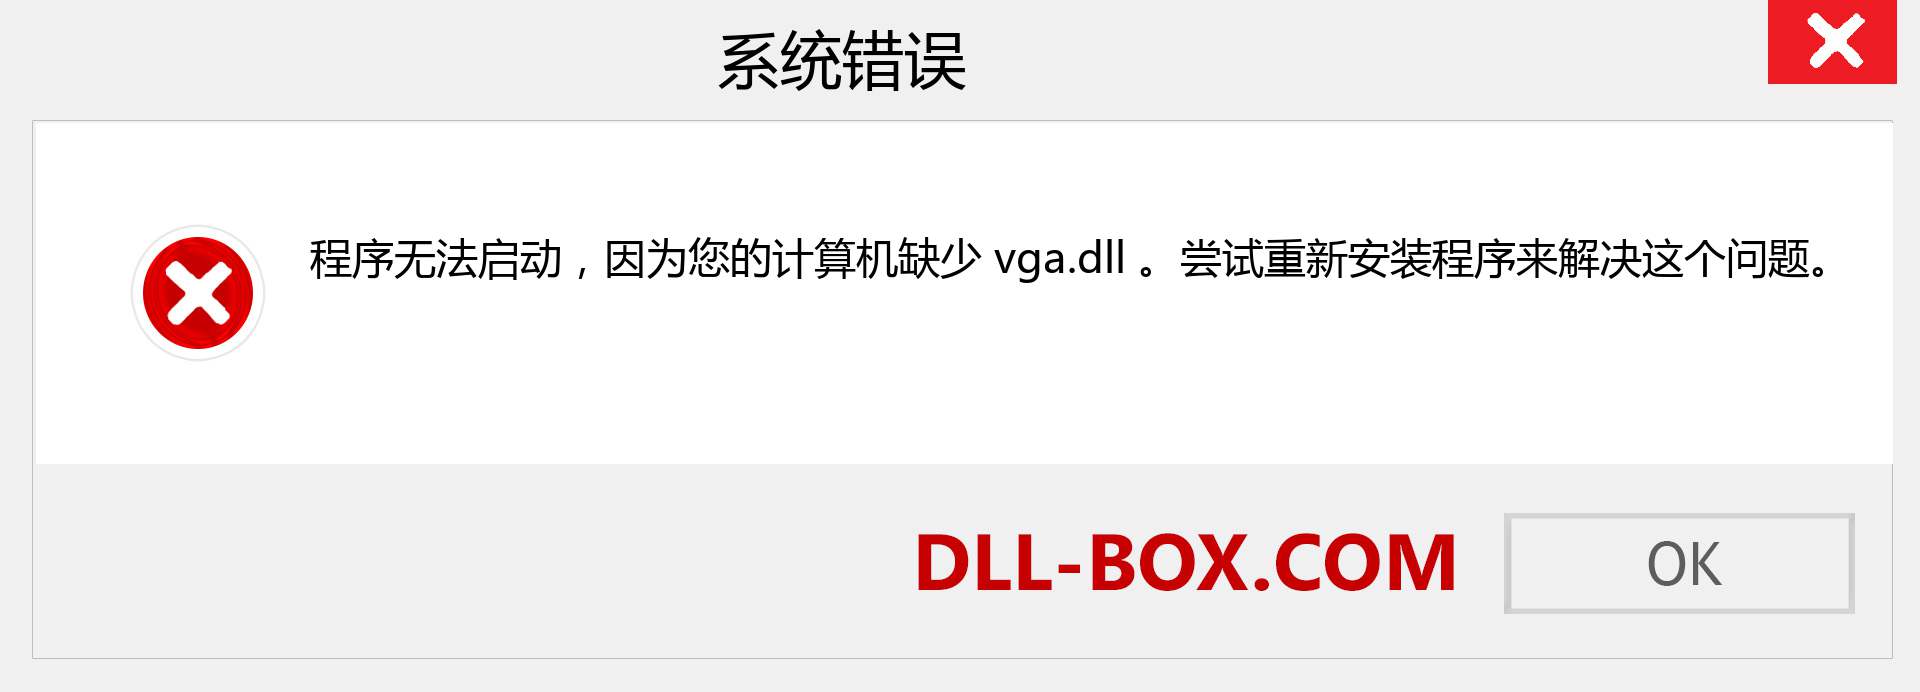 vga.dll 文件丢失？。 适用于 Windows 7、8、10 的下载 - 修复 Windows、照片、图像上的 vga dll 丢失错误